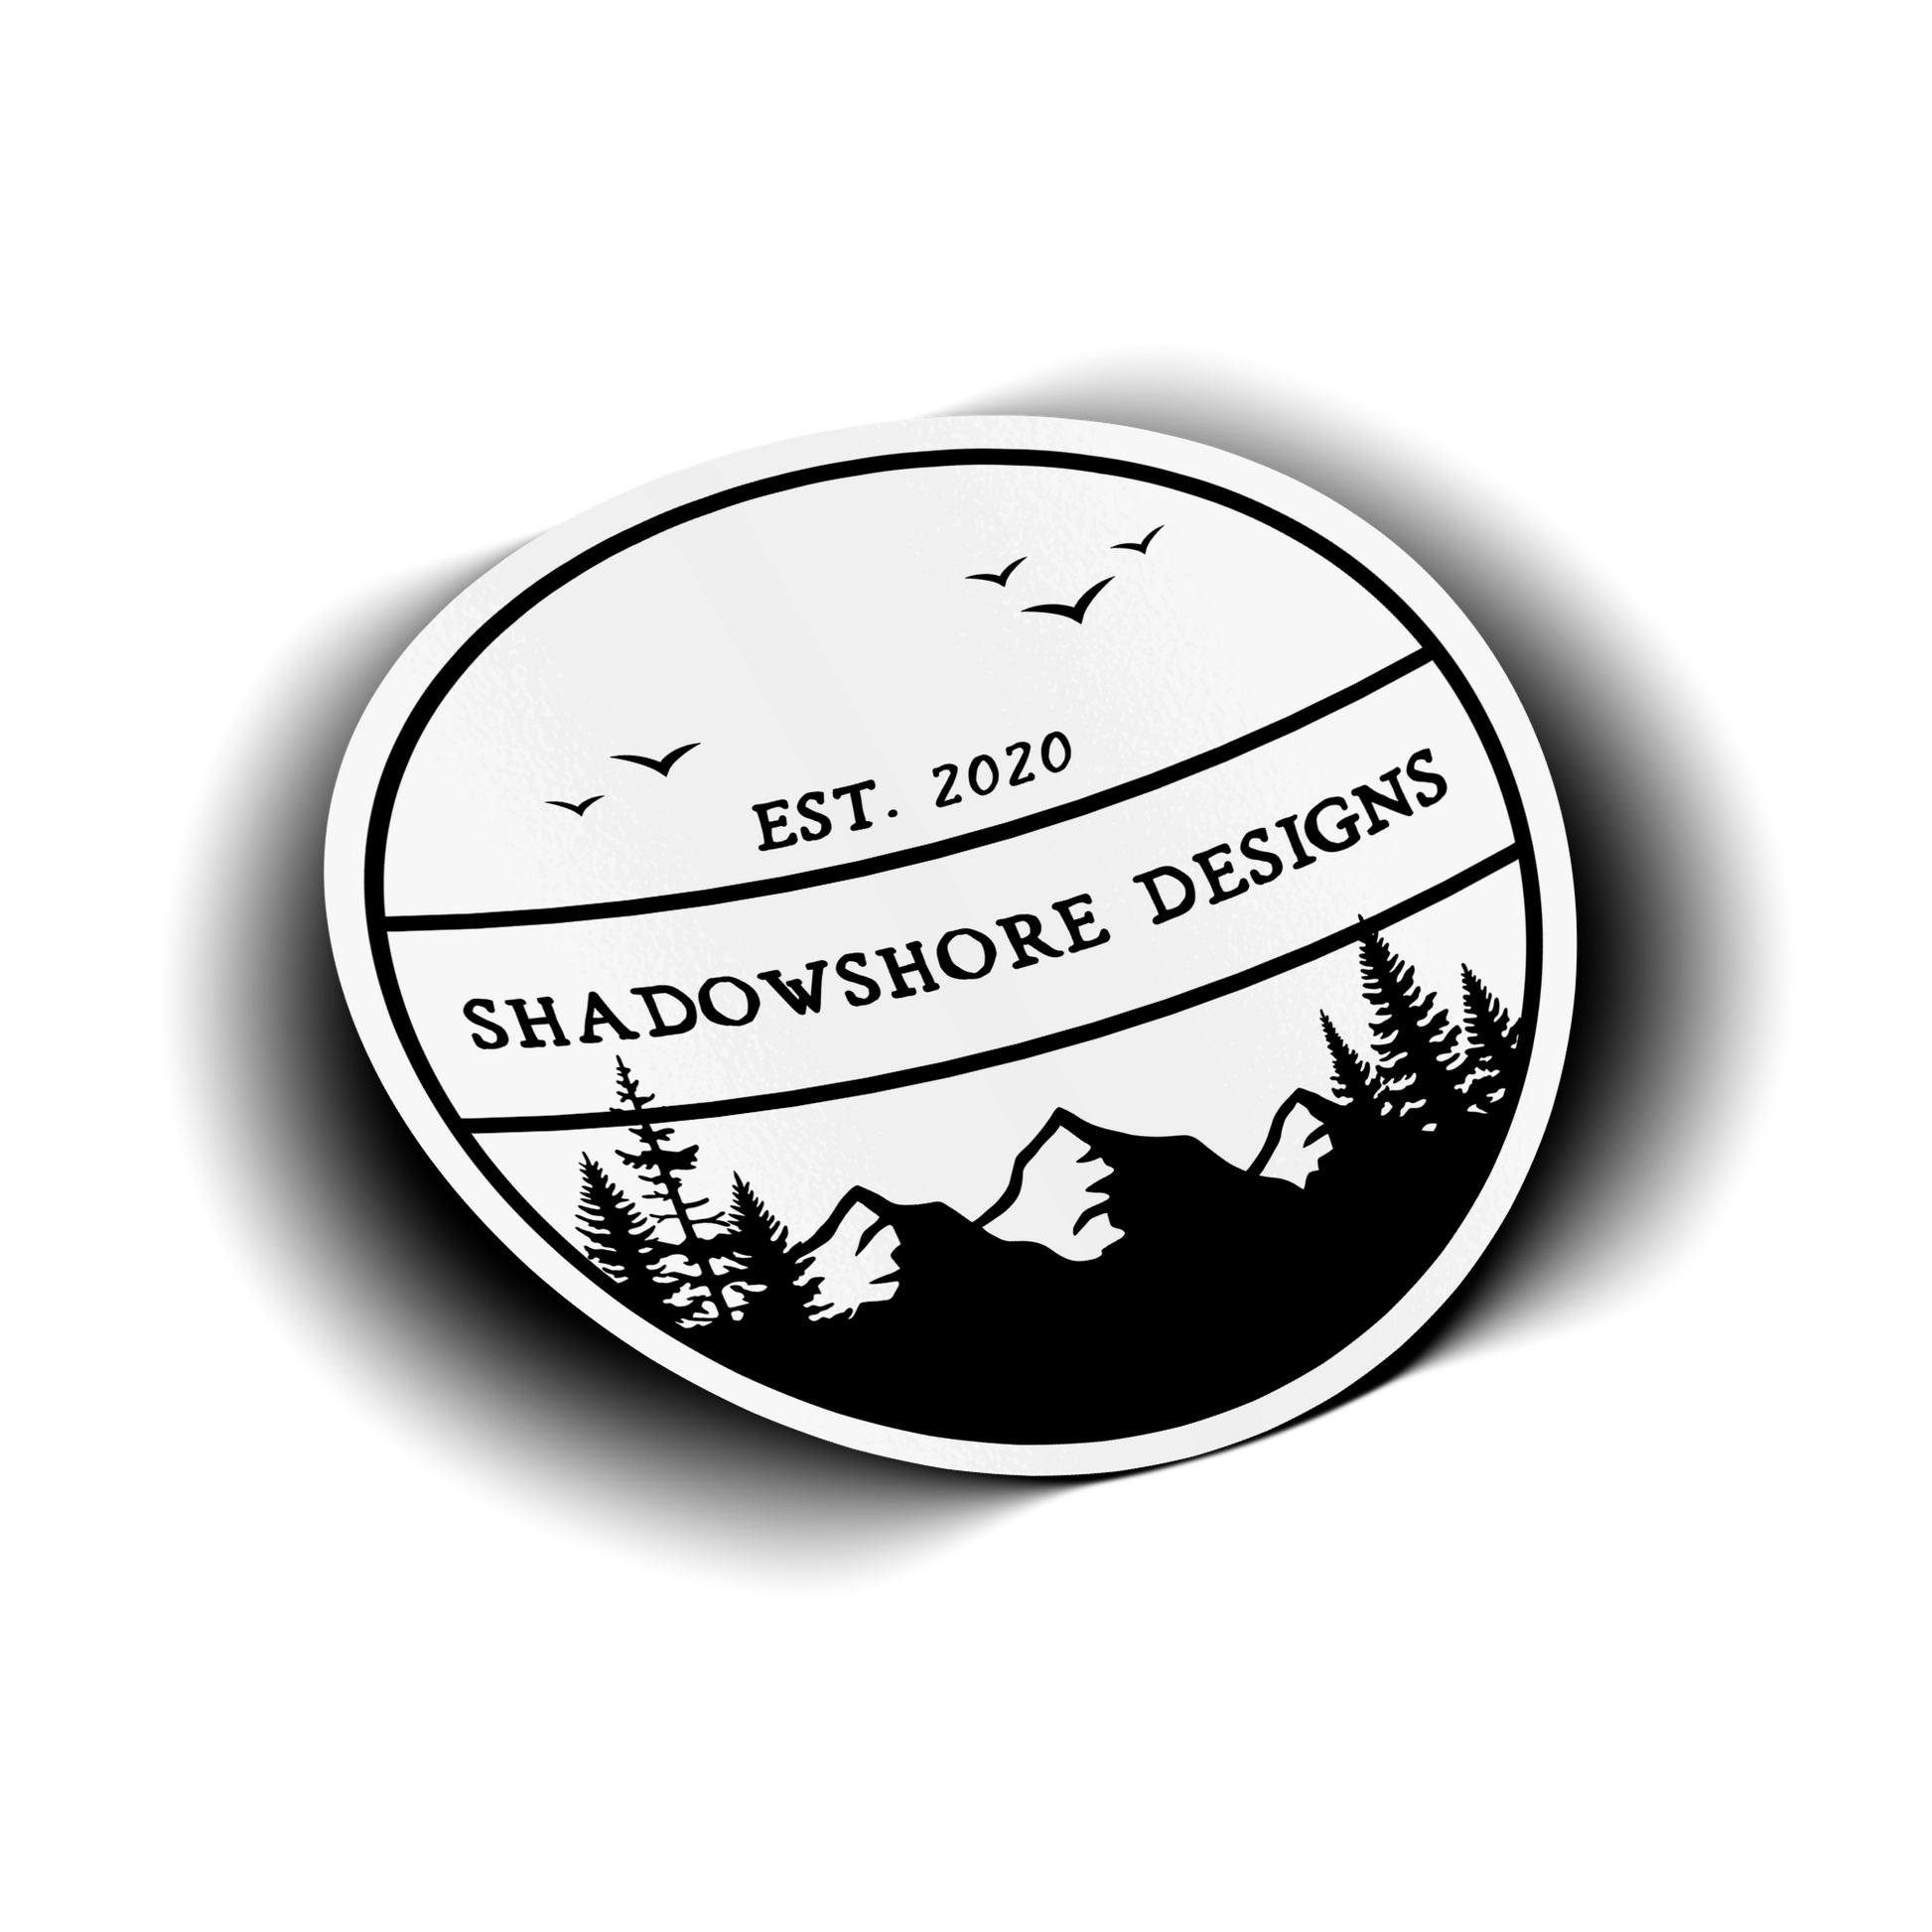 Shadowshore Designs Original Sticker